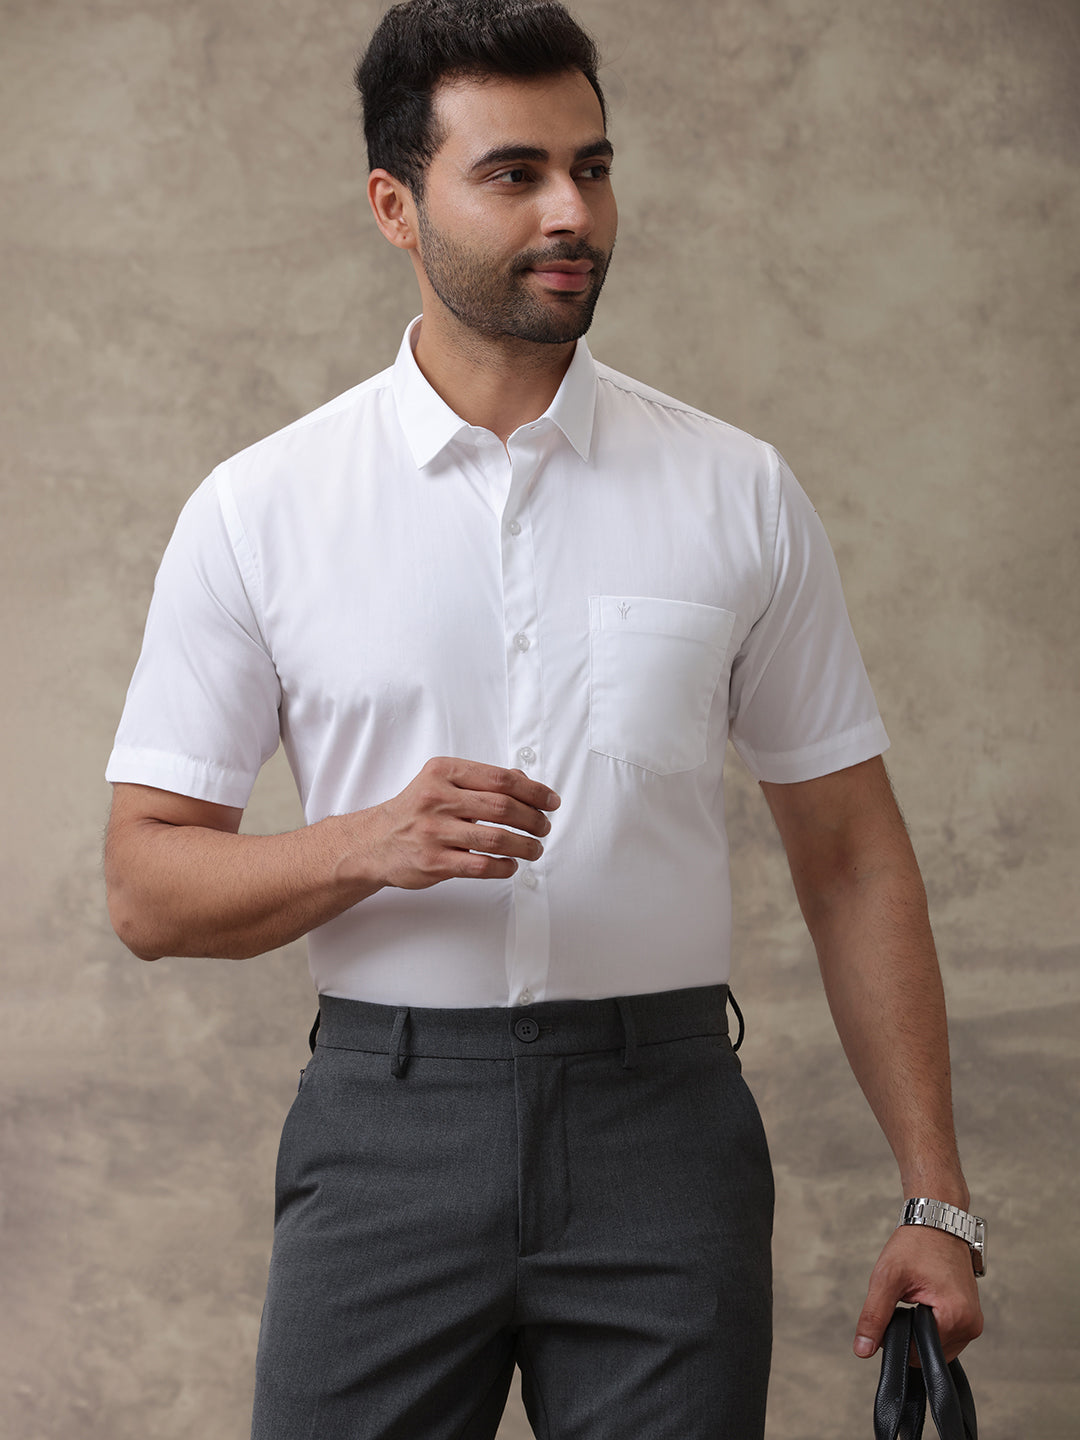 Mens Premium 100% Cotton White Shirt -Majestic